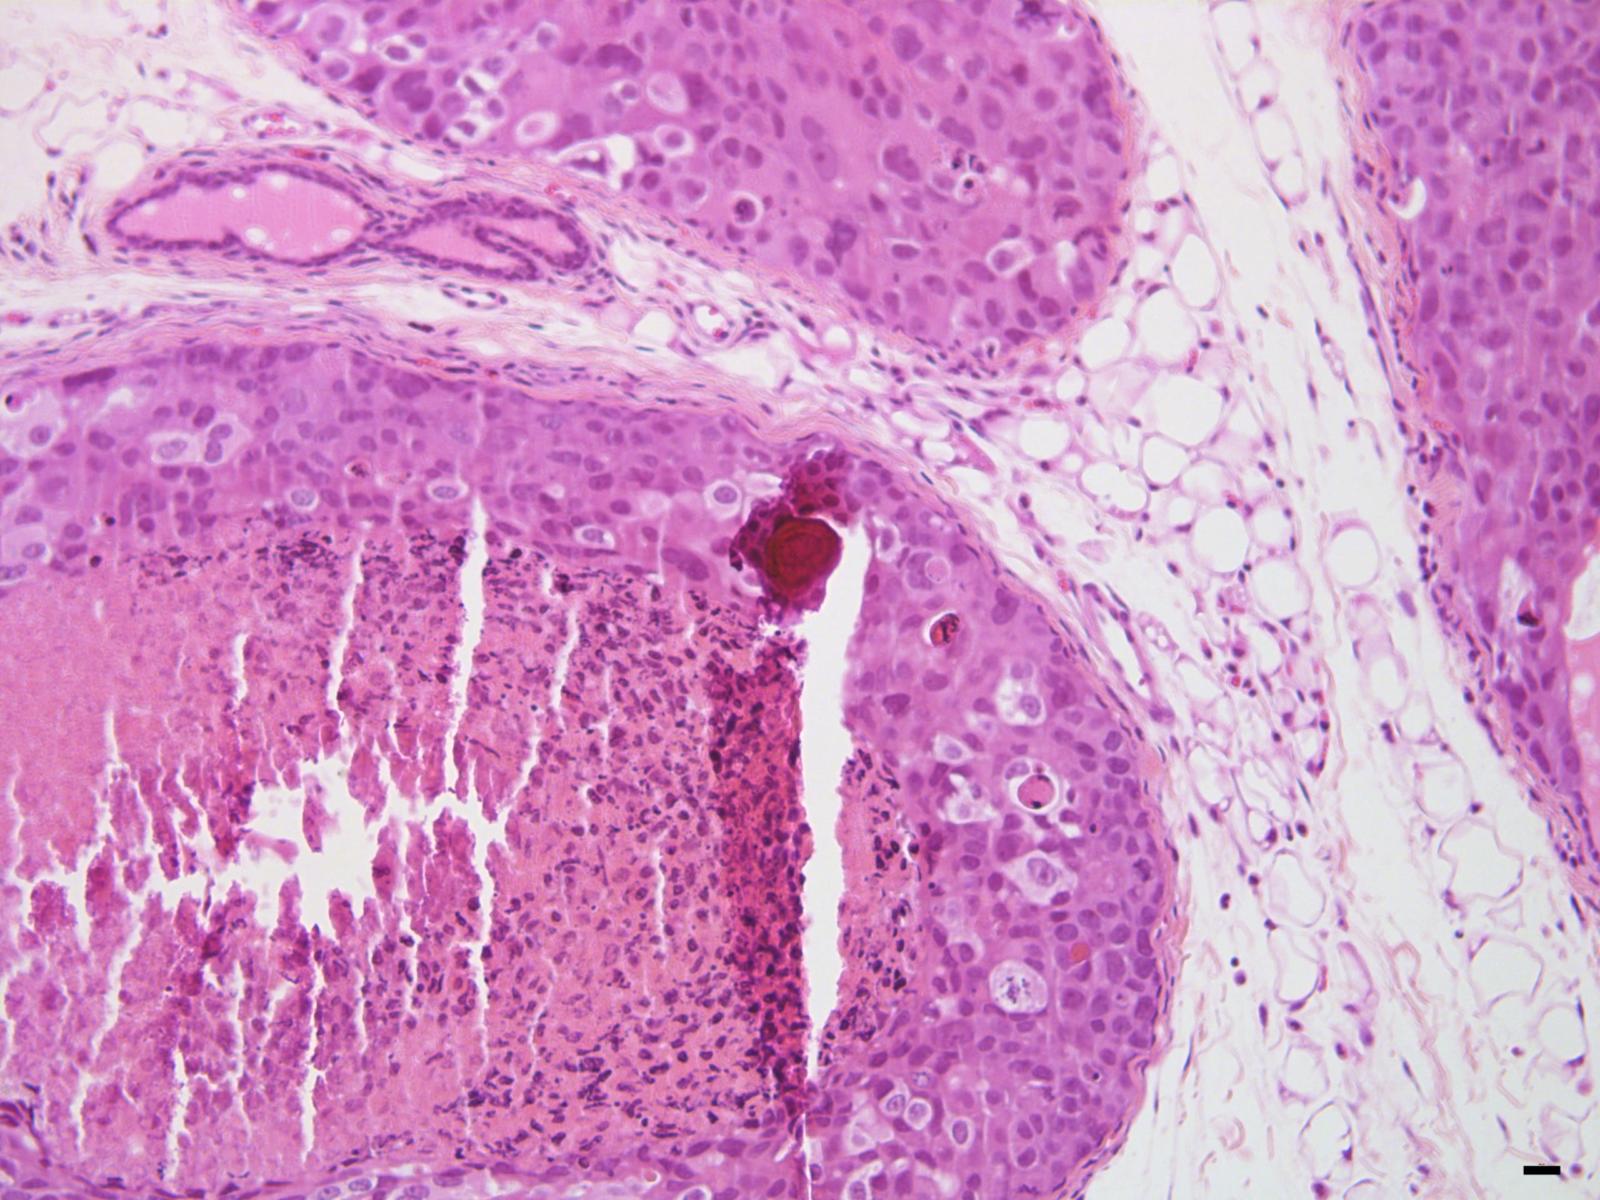 Mikroverkalkung, verursacht durch eine Östrogenrezeptor-positive Brustkrebszelllinie (MCF7), die intraduktal wächst